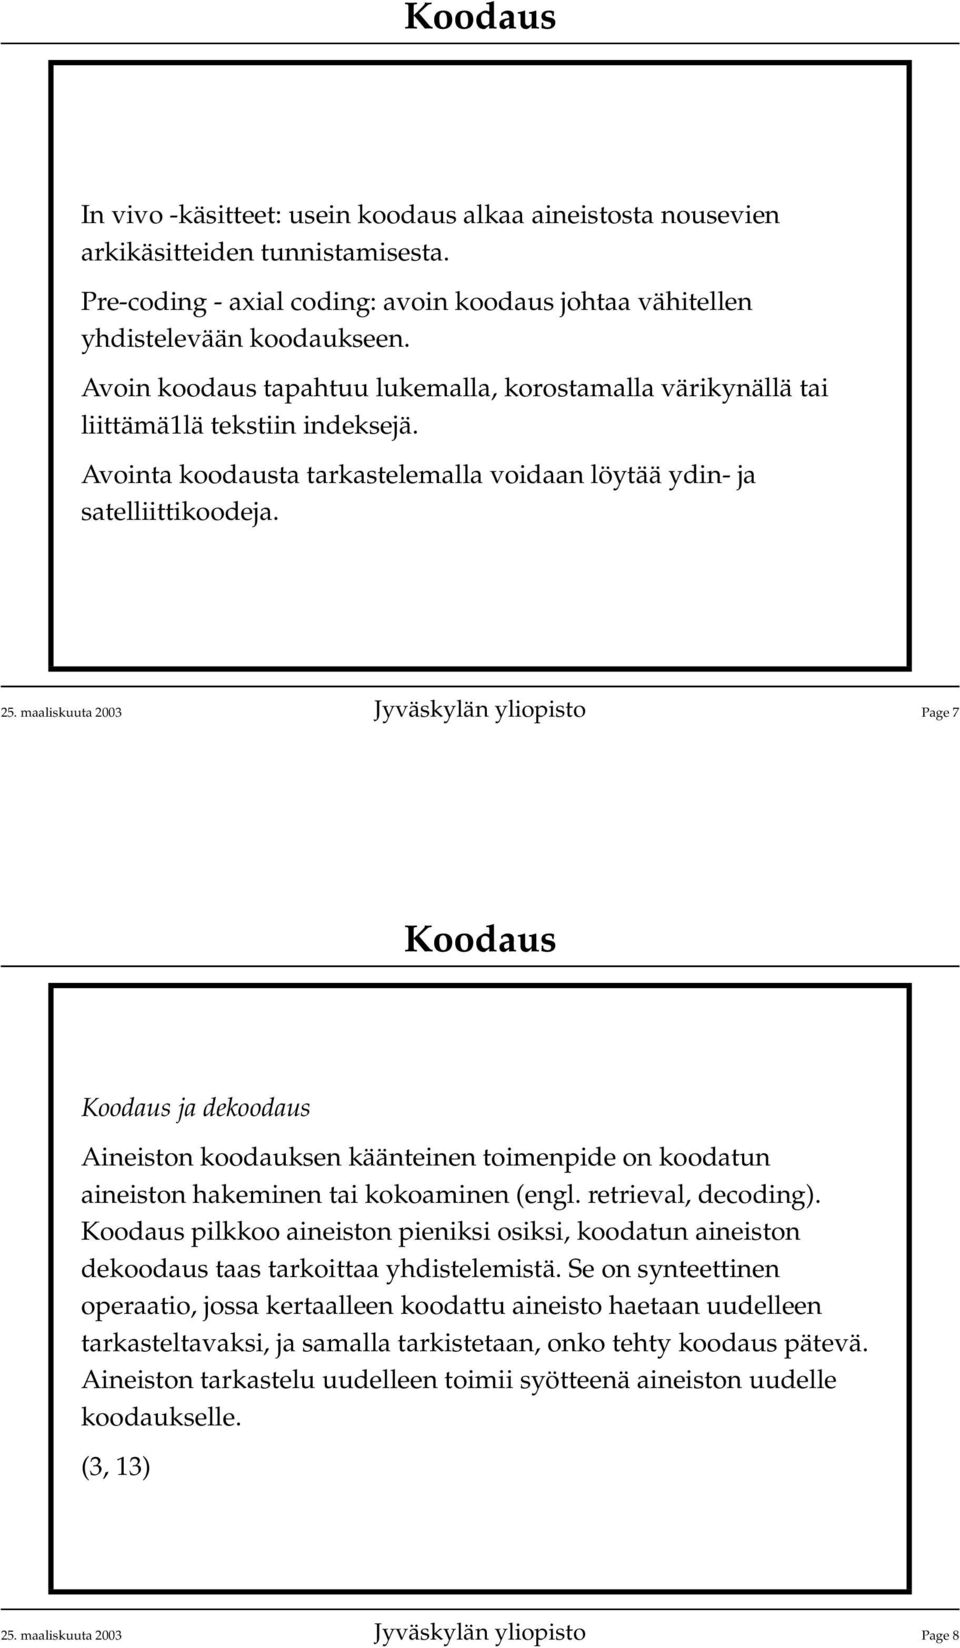 maaliskuuta 2003 Jyväskylän yliopisto Page 7 ja dekoodaus Aineiston koodauksen käänteinen toimenpide on koodatun aineiston hakeminen tai kokoaminen (engl. retrieval, decoding).